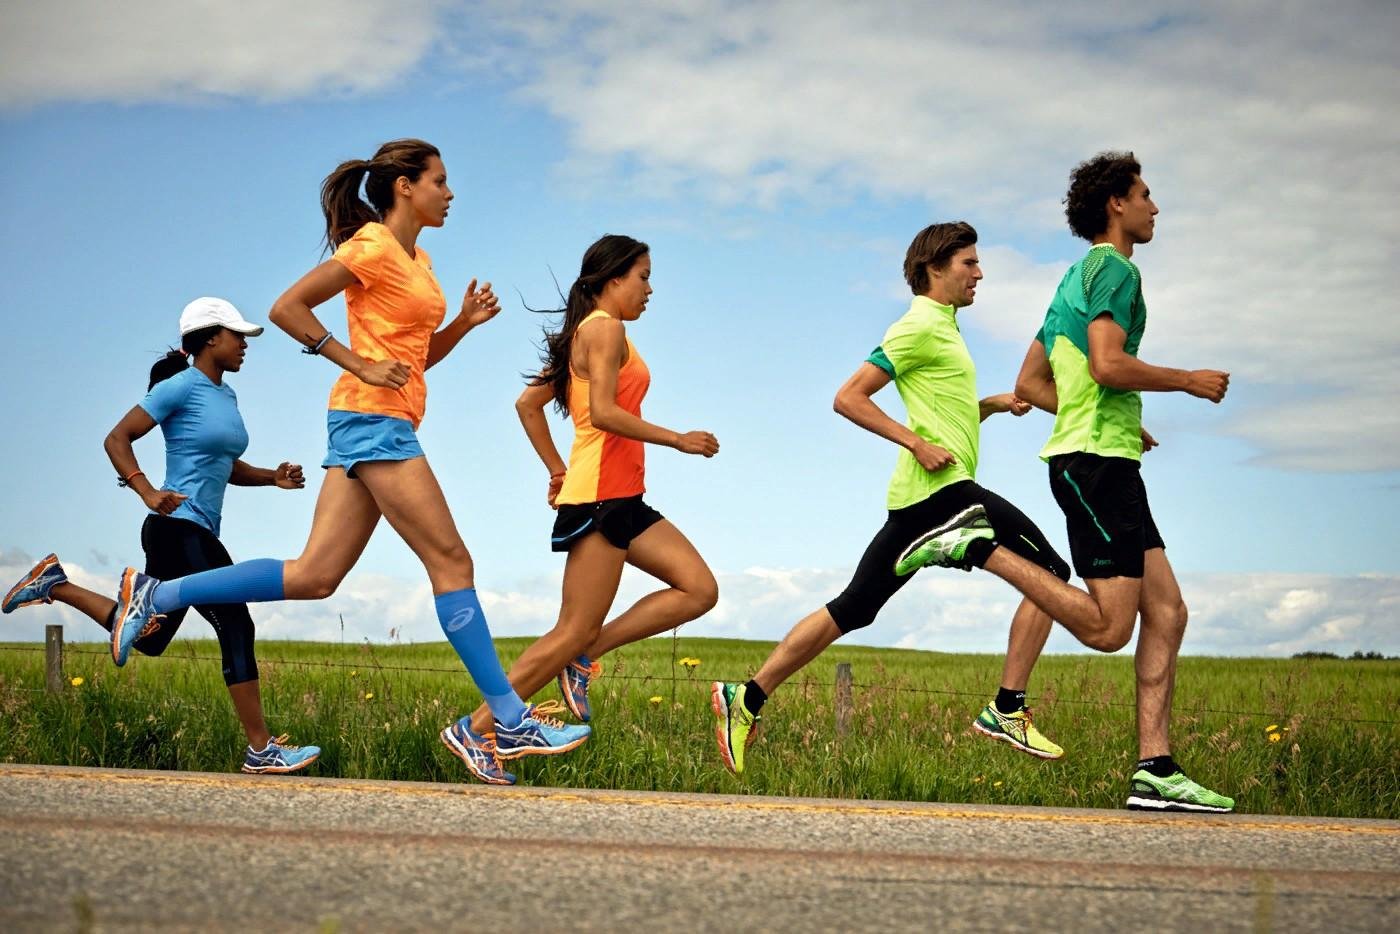 Ходьба и бег врассыпную. Спорт бег. Спортивные люди. Бегущий человек. Занятие физкультурой и спортом.